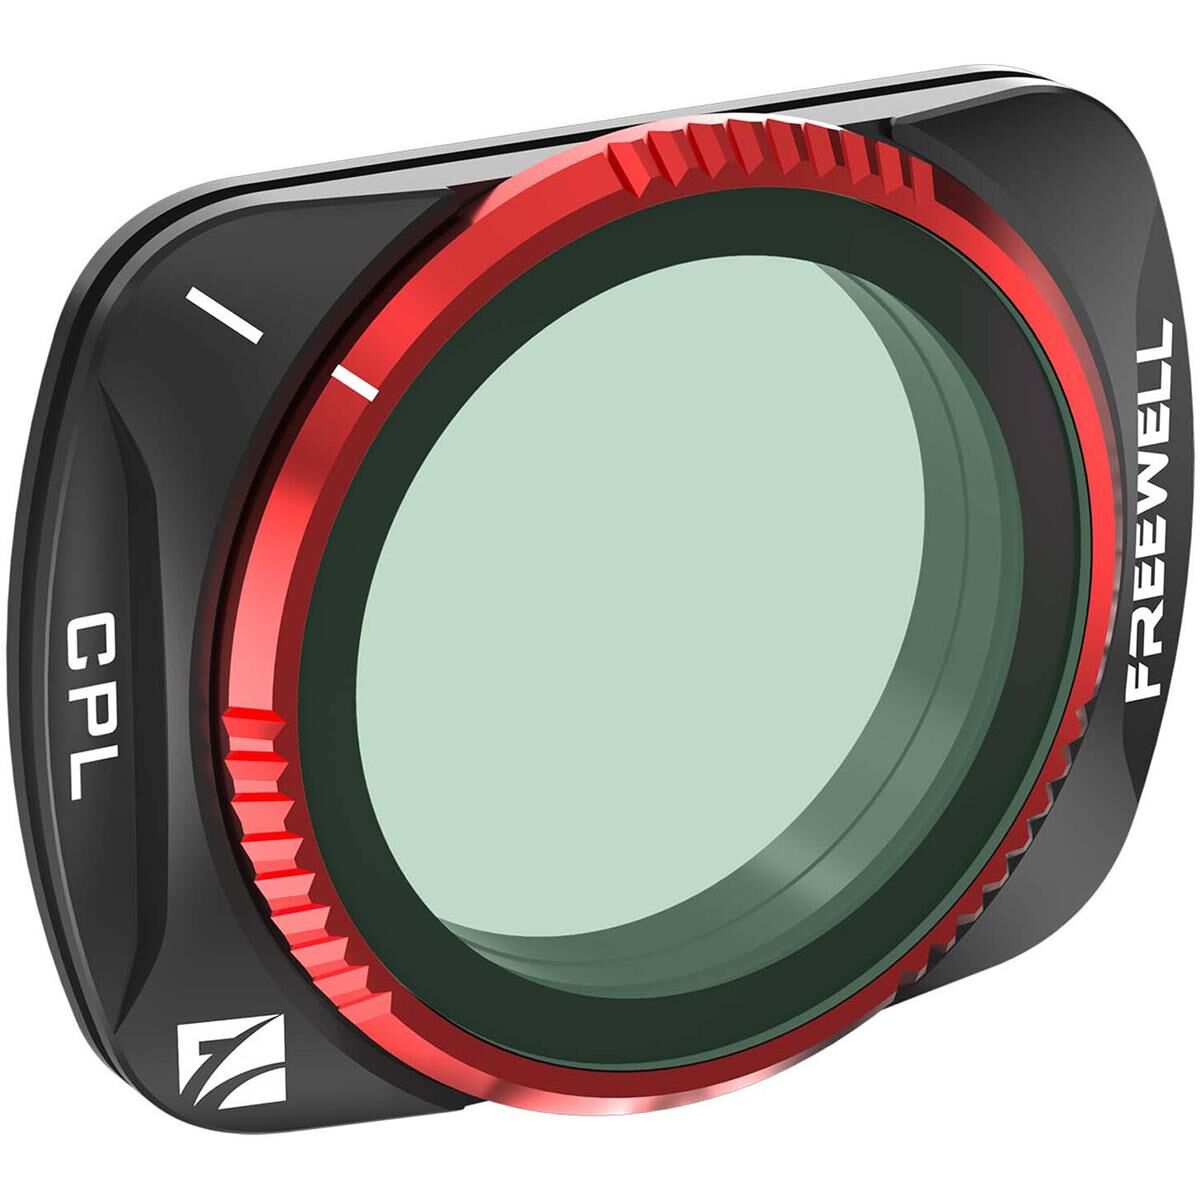 Freewell Circular Polarizer Lens Filter for DJI Osmo Pocket 3 Gimbal Camera